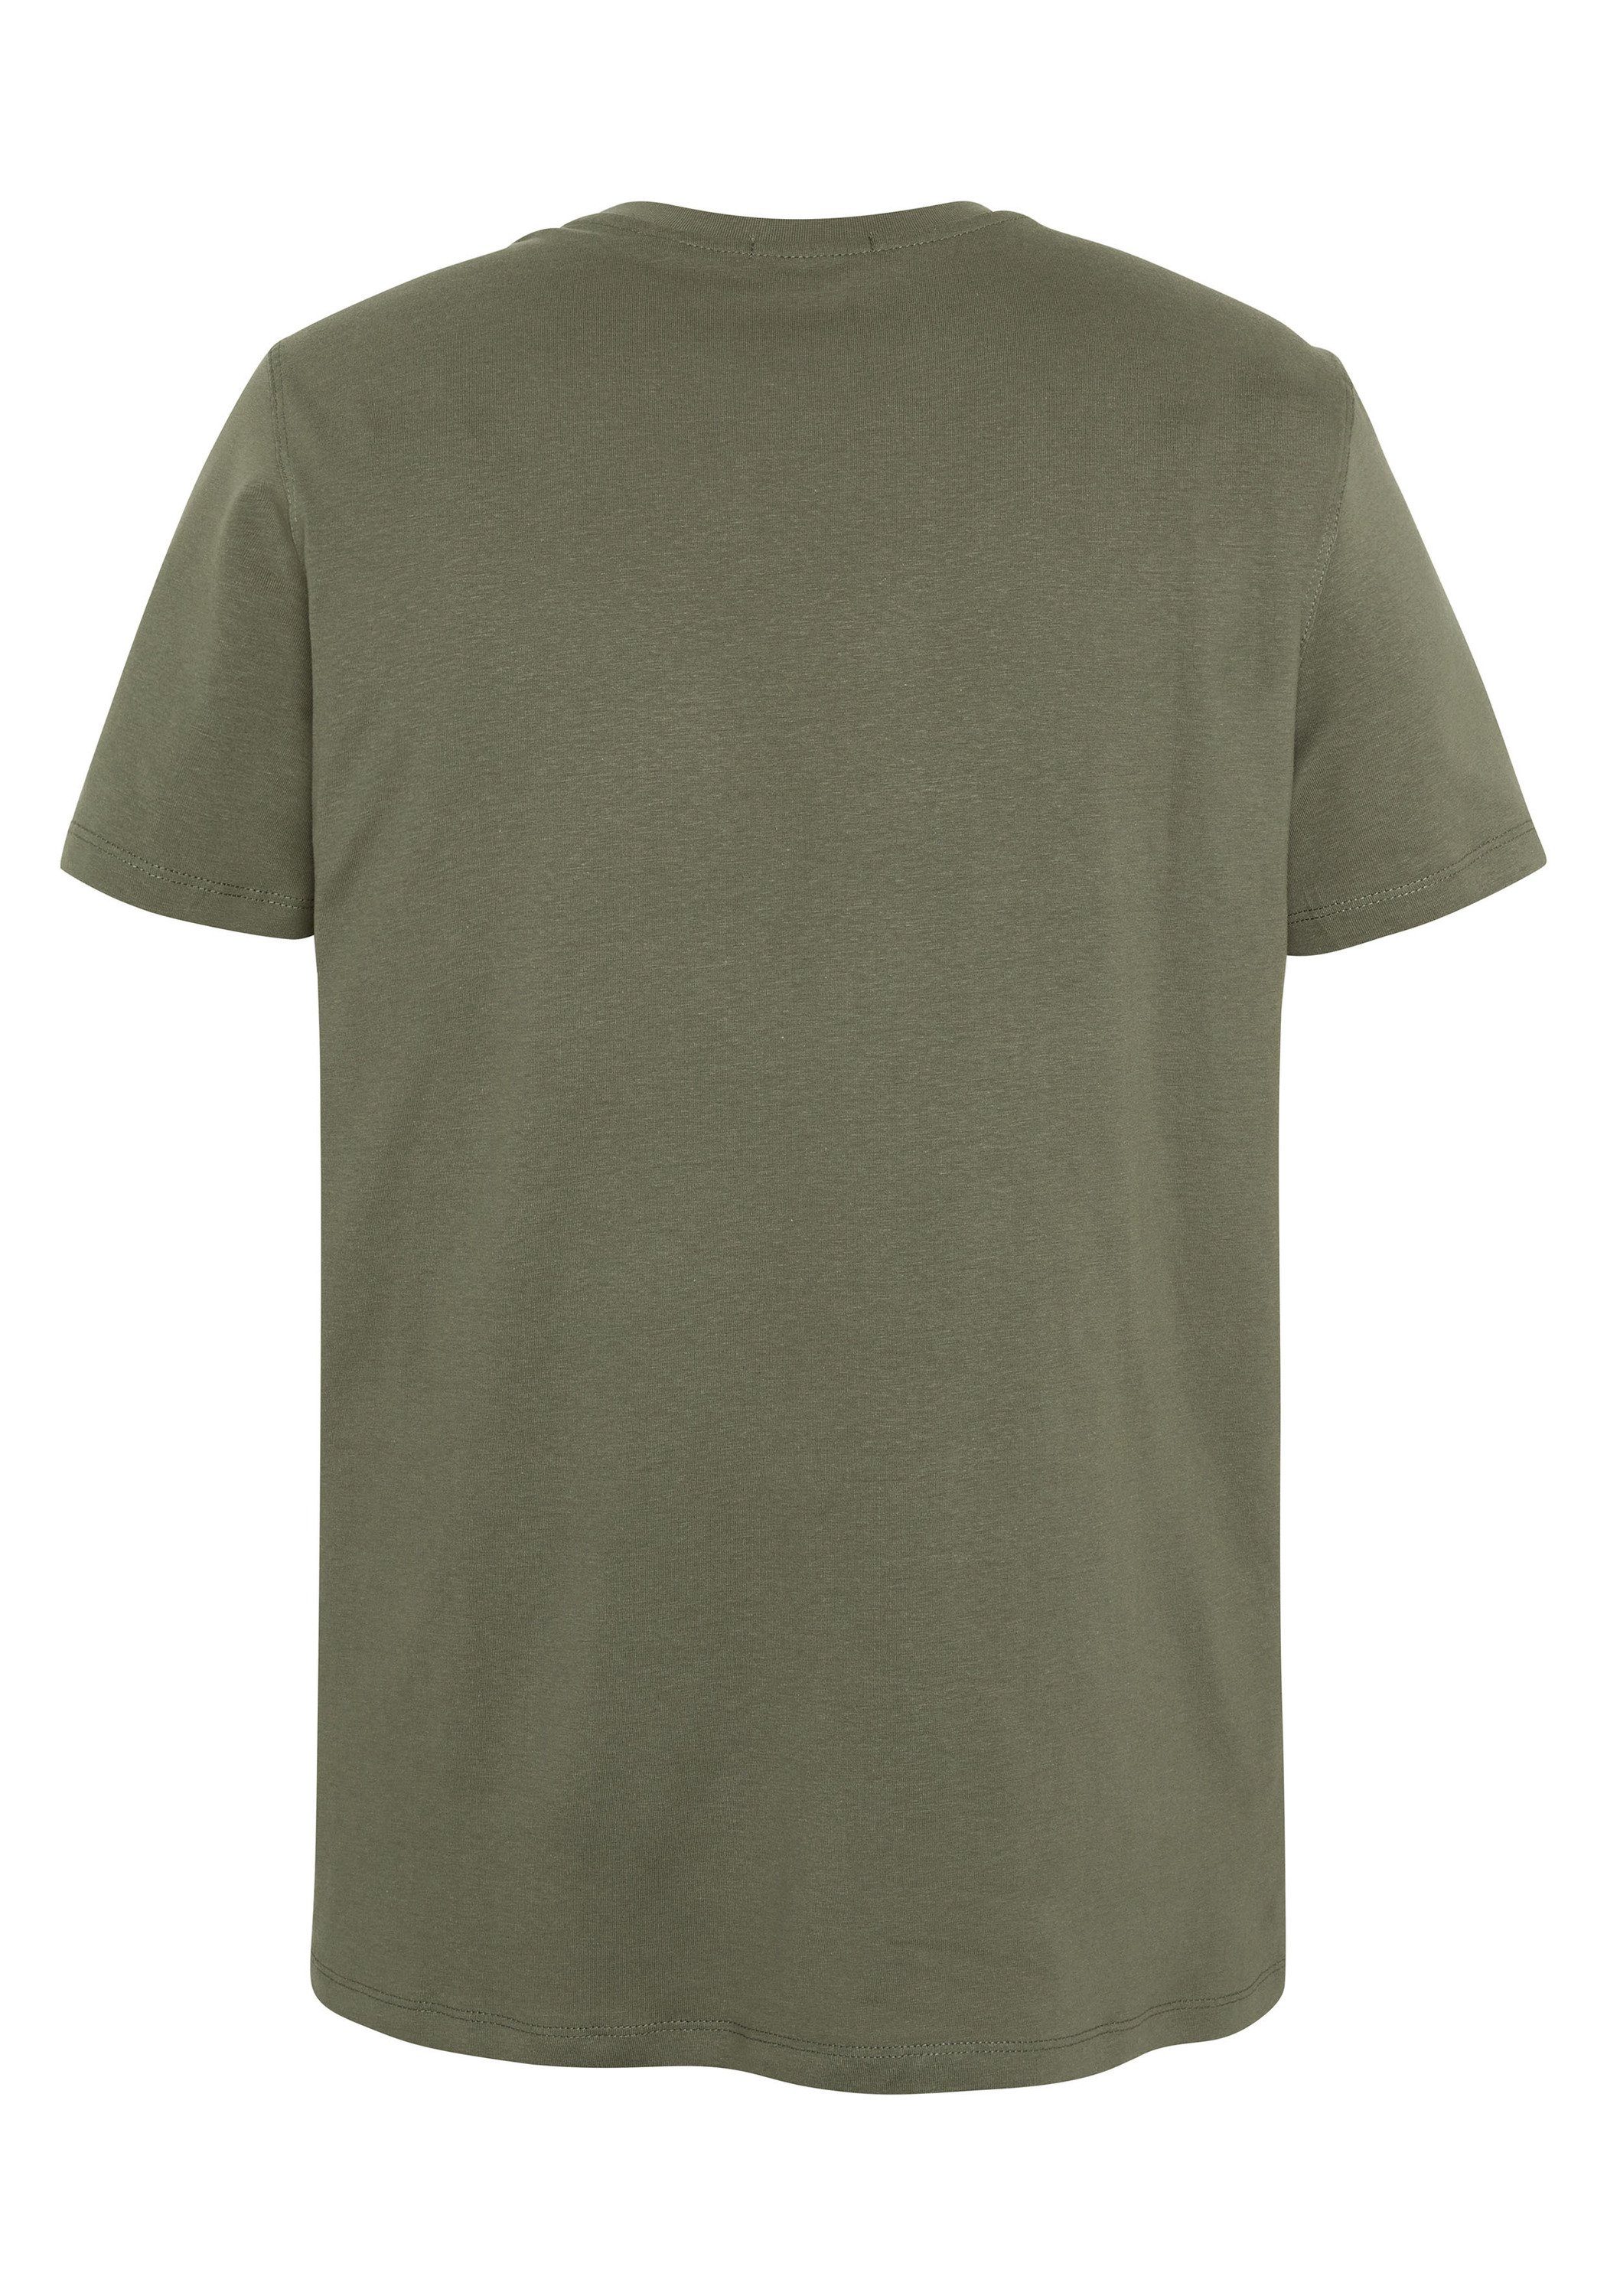 Chiemsee Print-Shirt T-Shirt Olive 1 18-0515 Label-Schriftzug Dusty mit